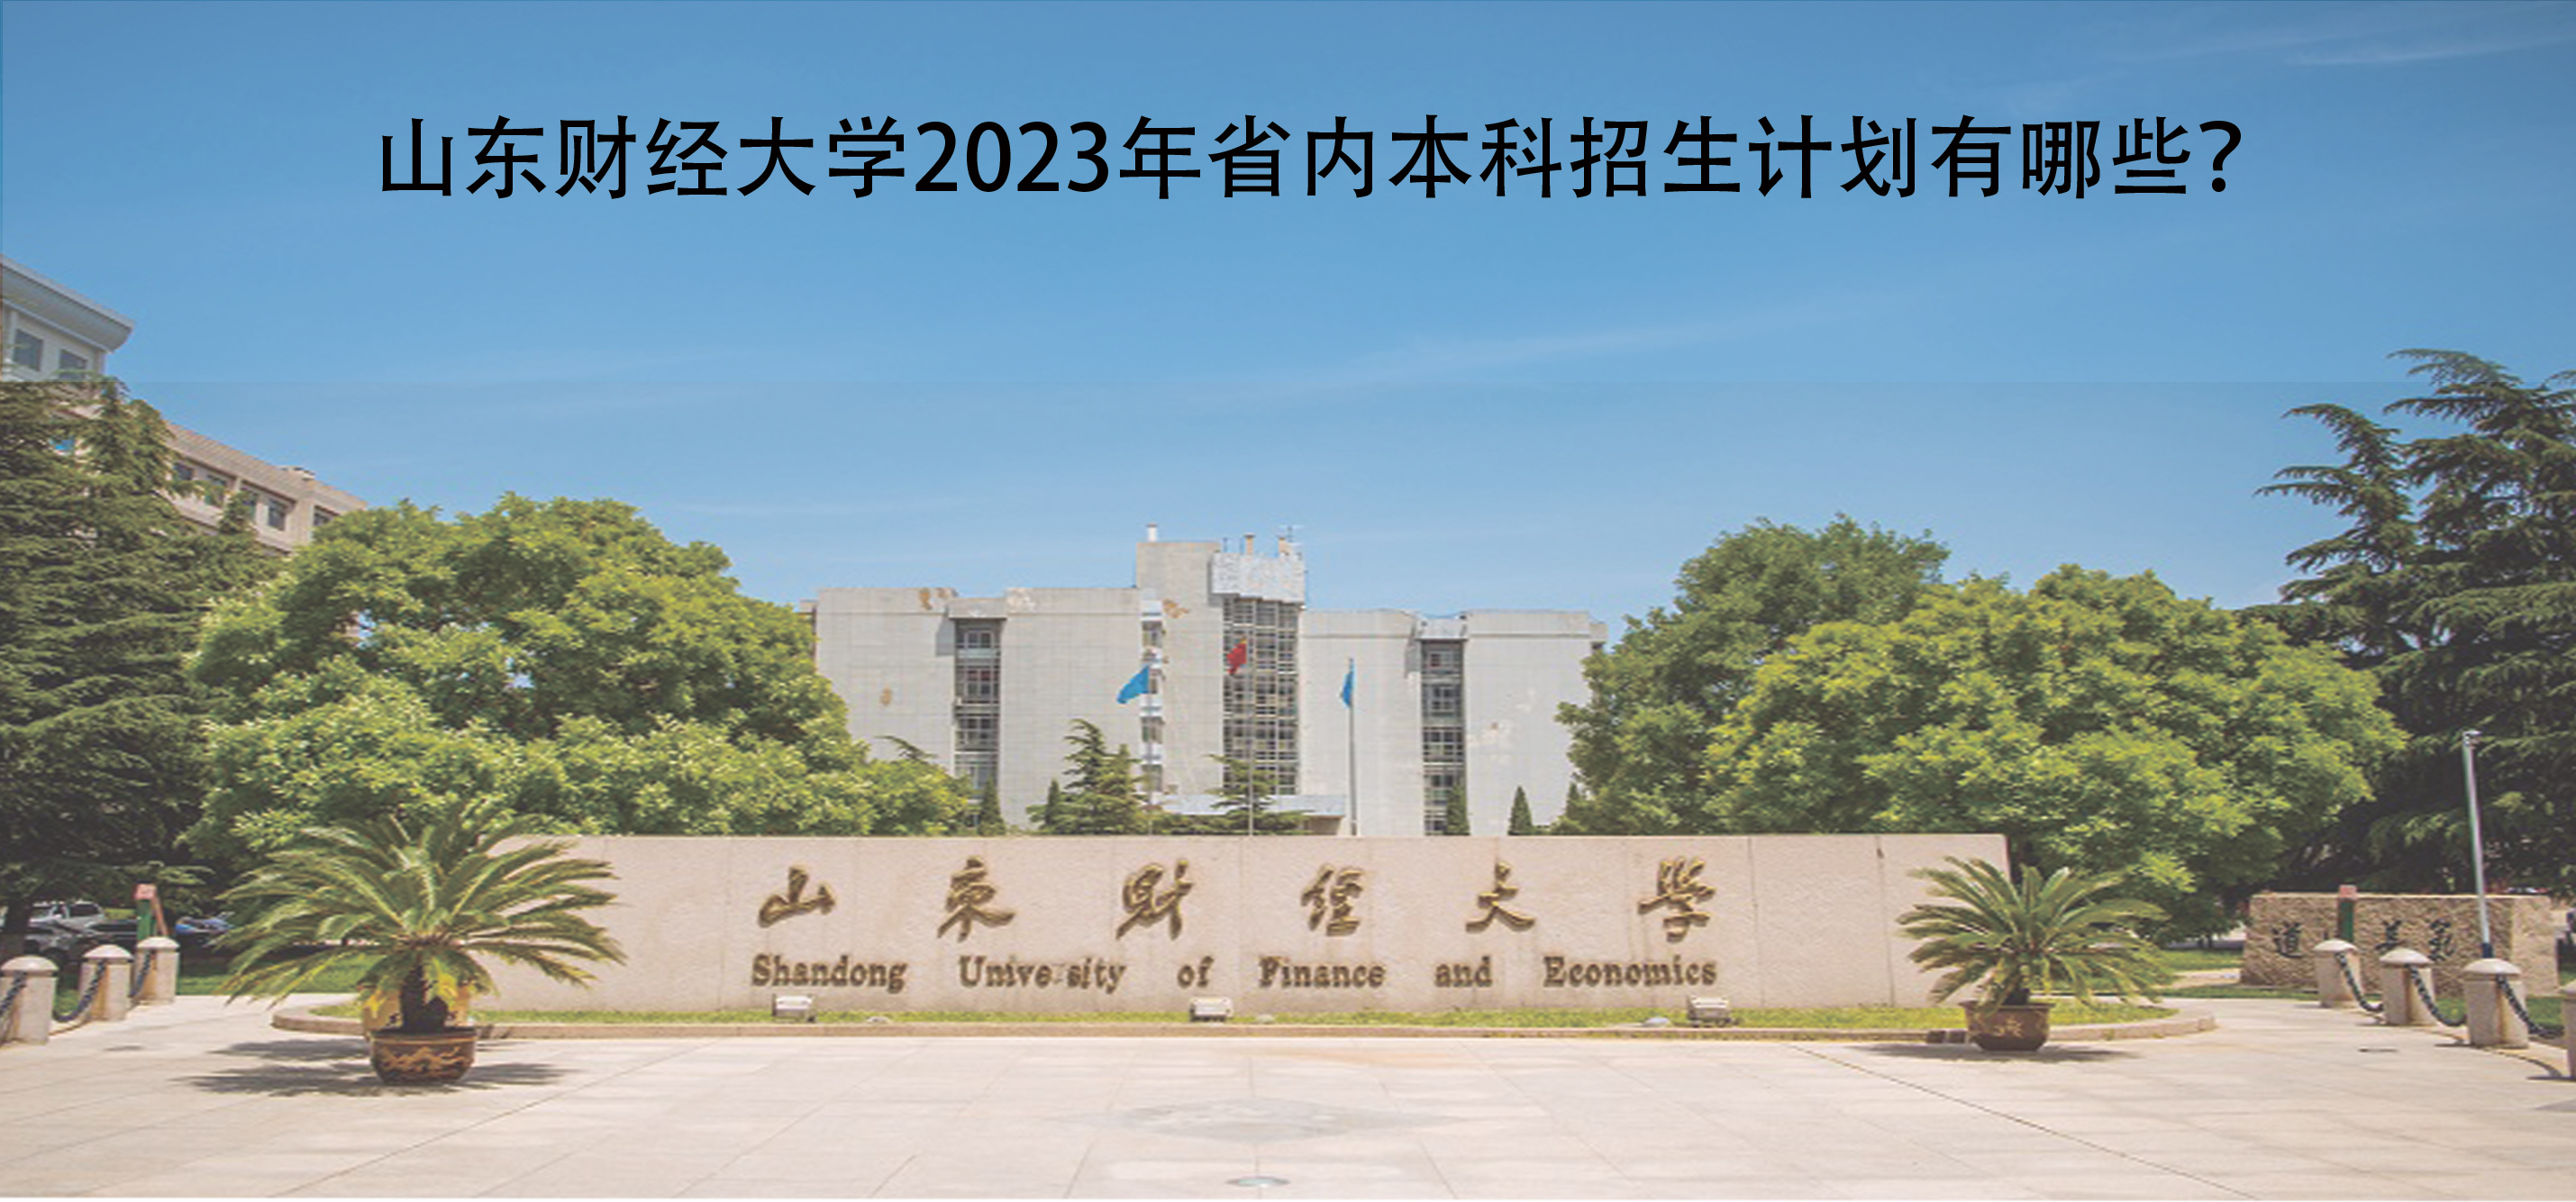 山东财经大学2023年省内本科招生计划有哪些?